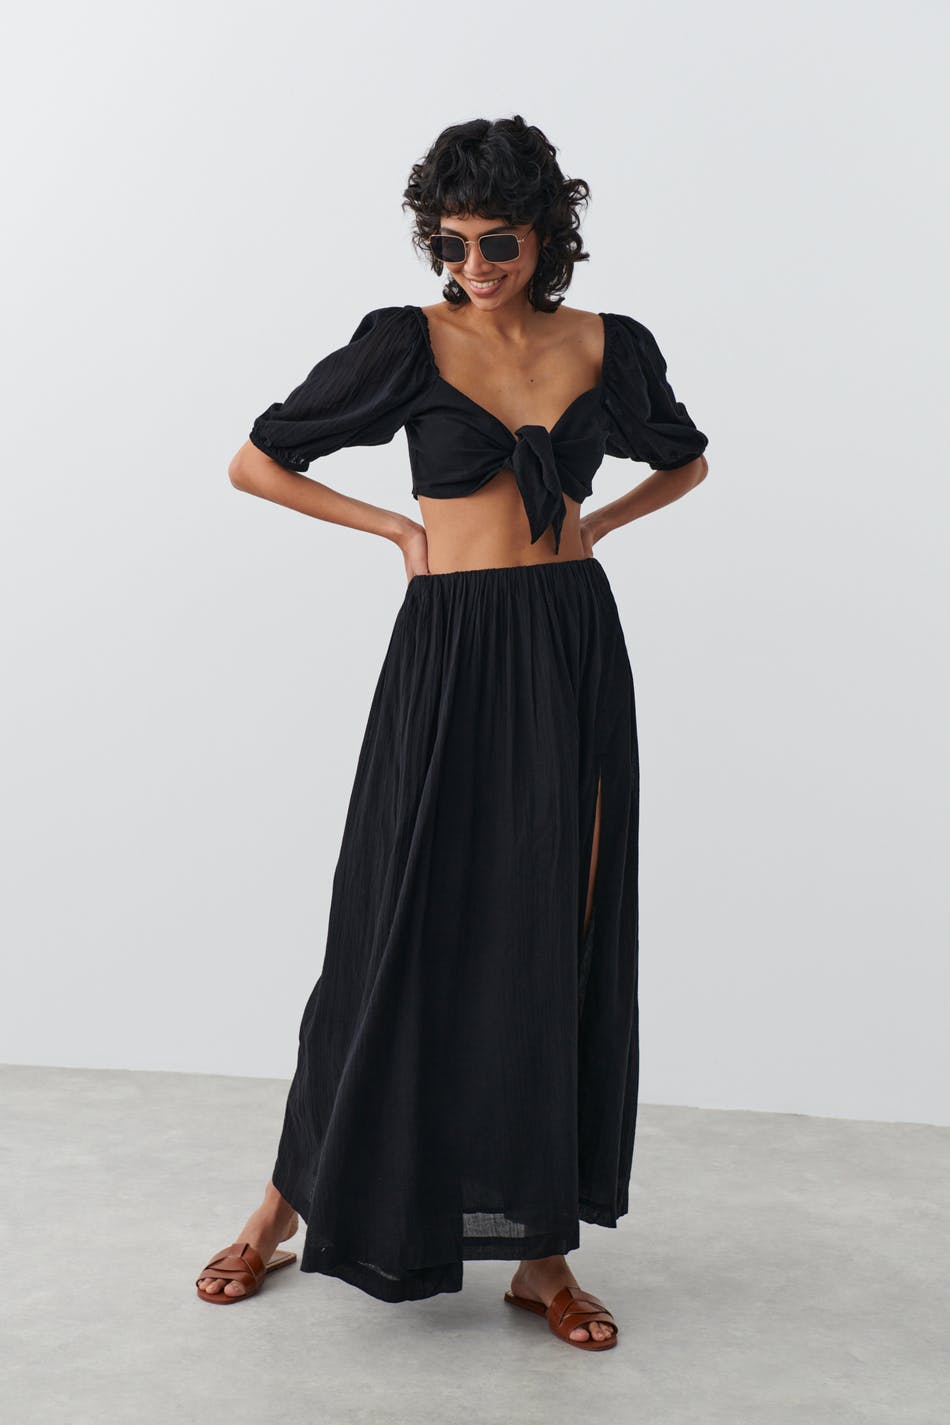 Ginna Midi Skirt - Front Slit Pencil Skirt in Black